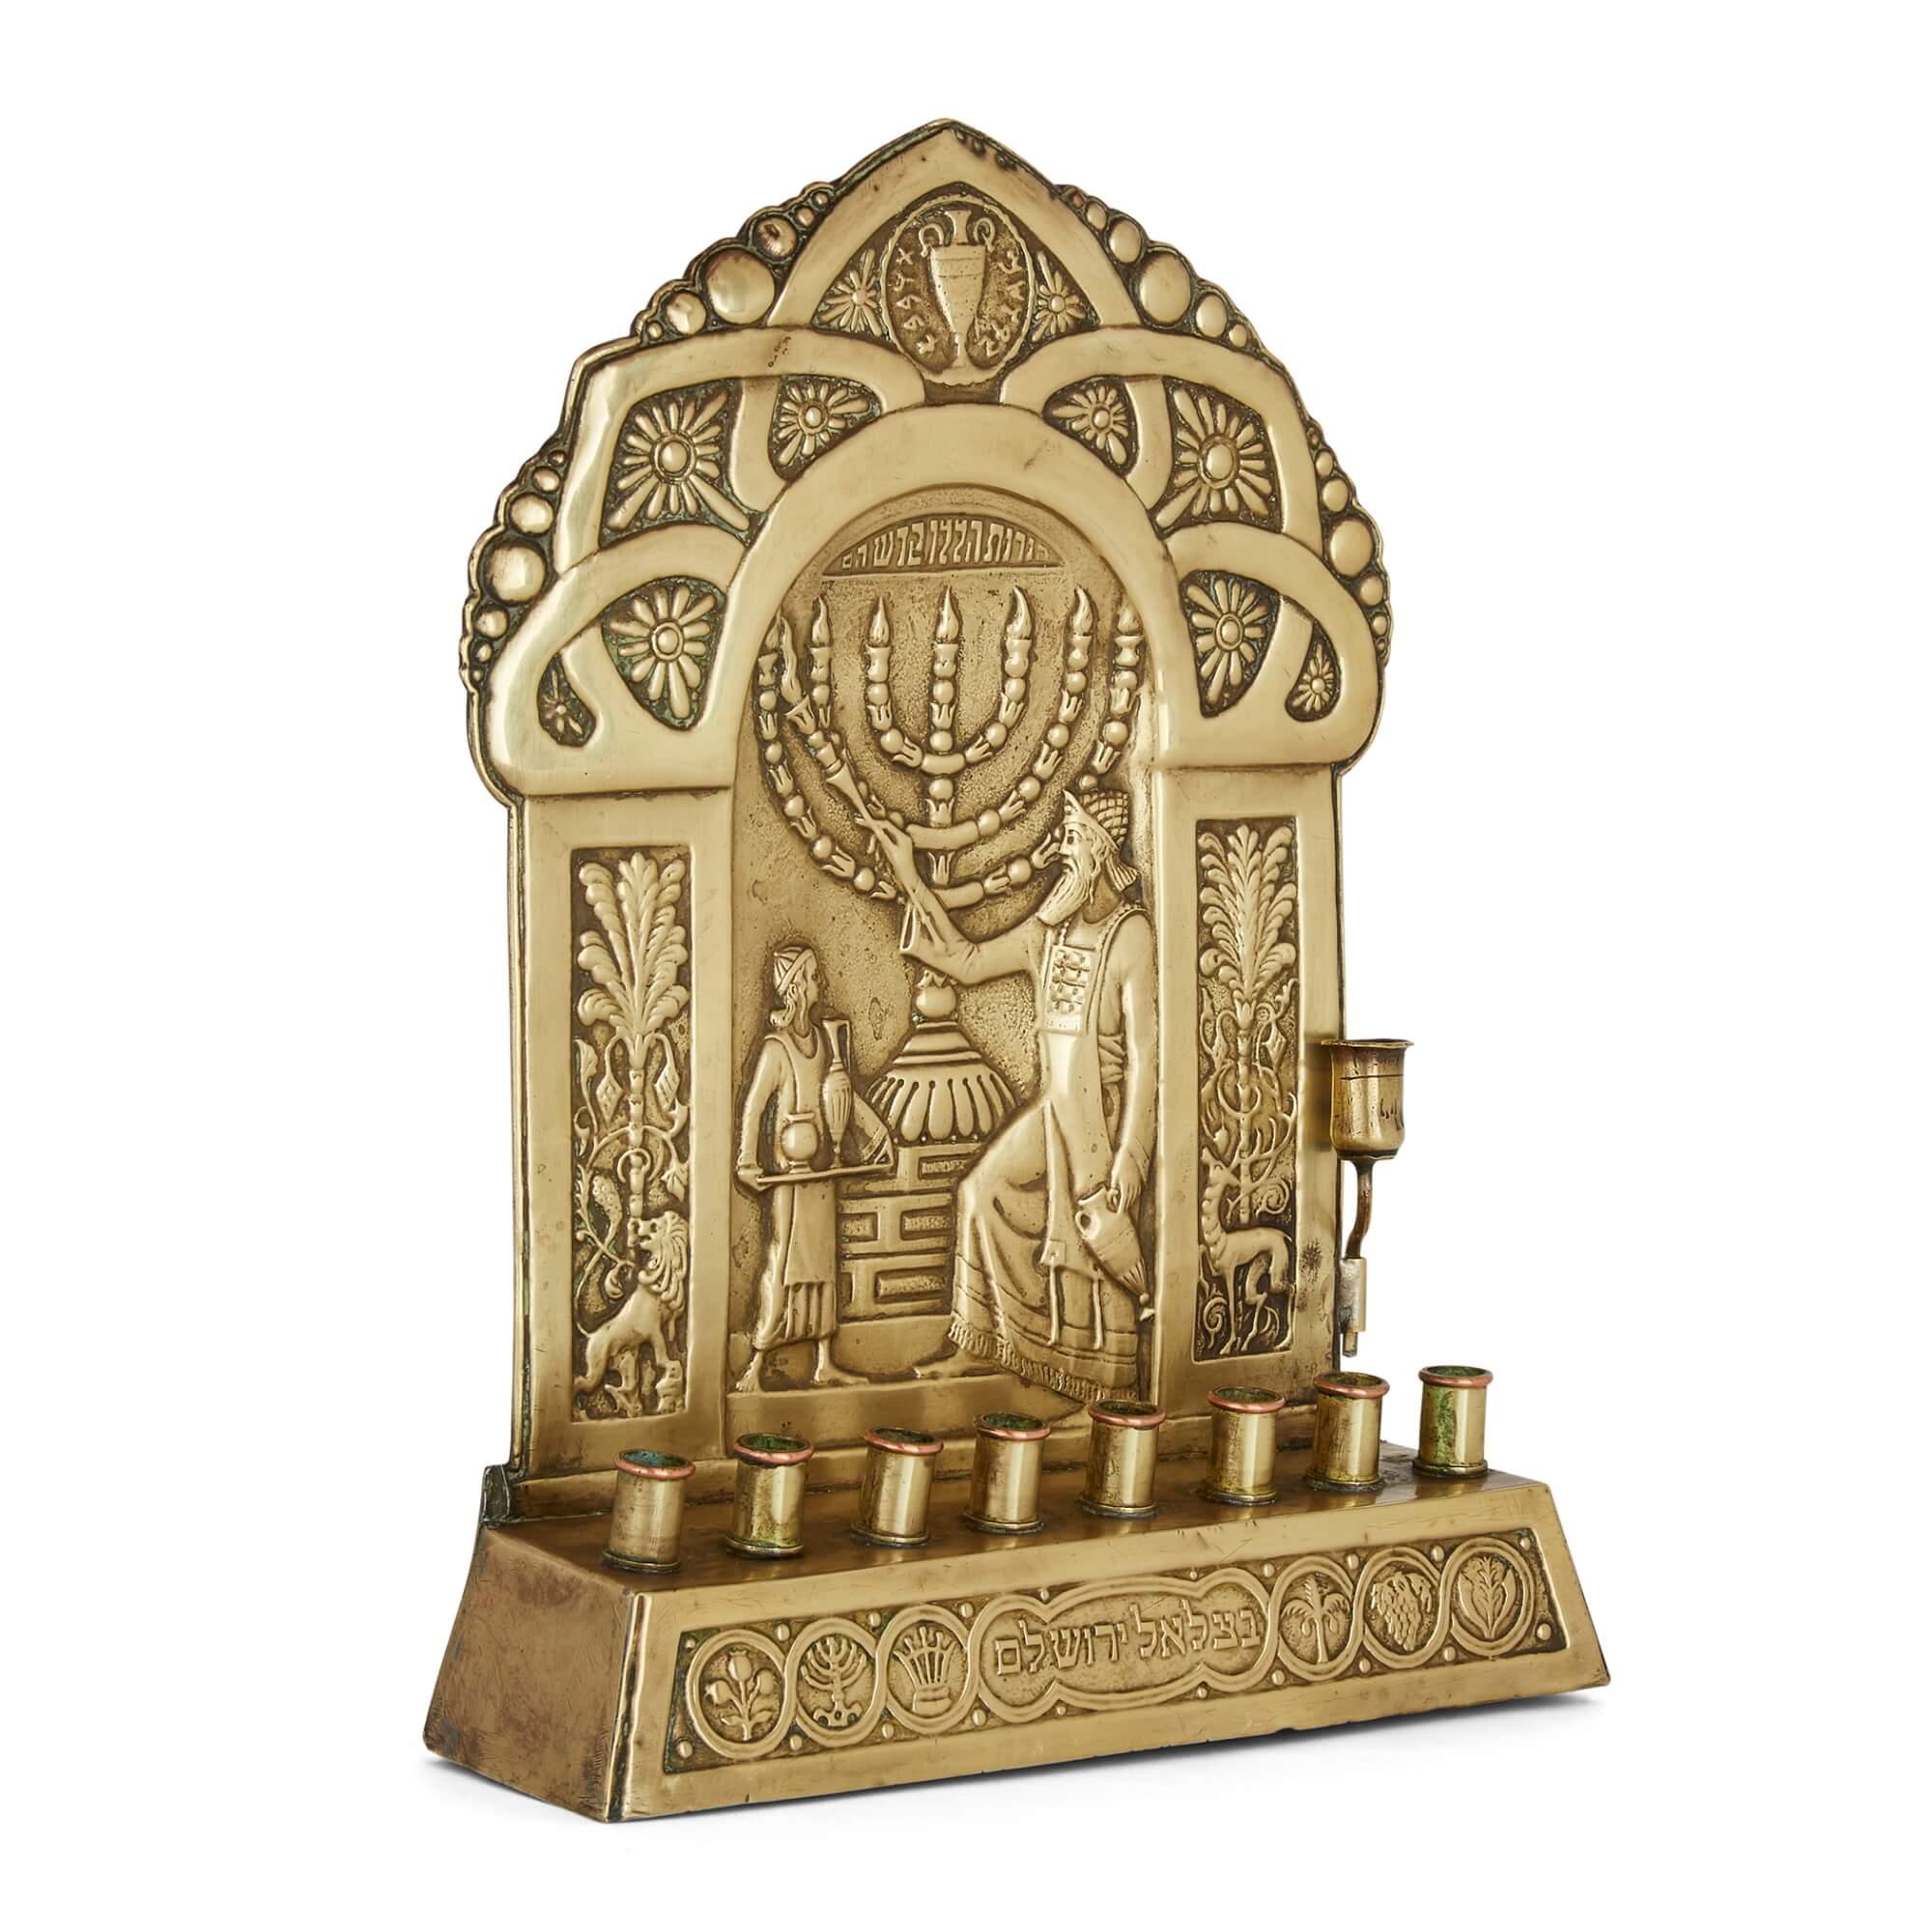 Eine antike Judaica-Menora aus Messing aus dem frühen 20. Jahrhundert von der Bezalel-Akademie, Jerusalem
Israel, um 1930
Maße: 28cm hoch x 20cm breit x 5,5cm tief

Dieses feine Judaica-Stück wurde von der renommierten und hochgelobten